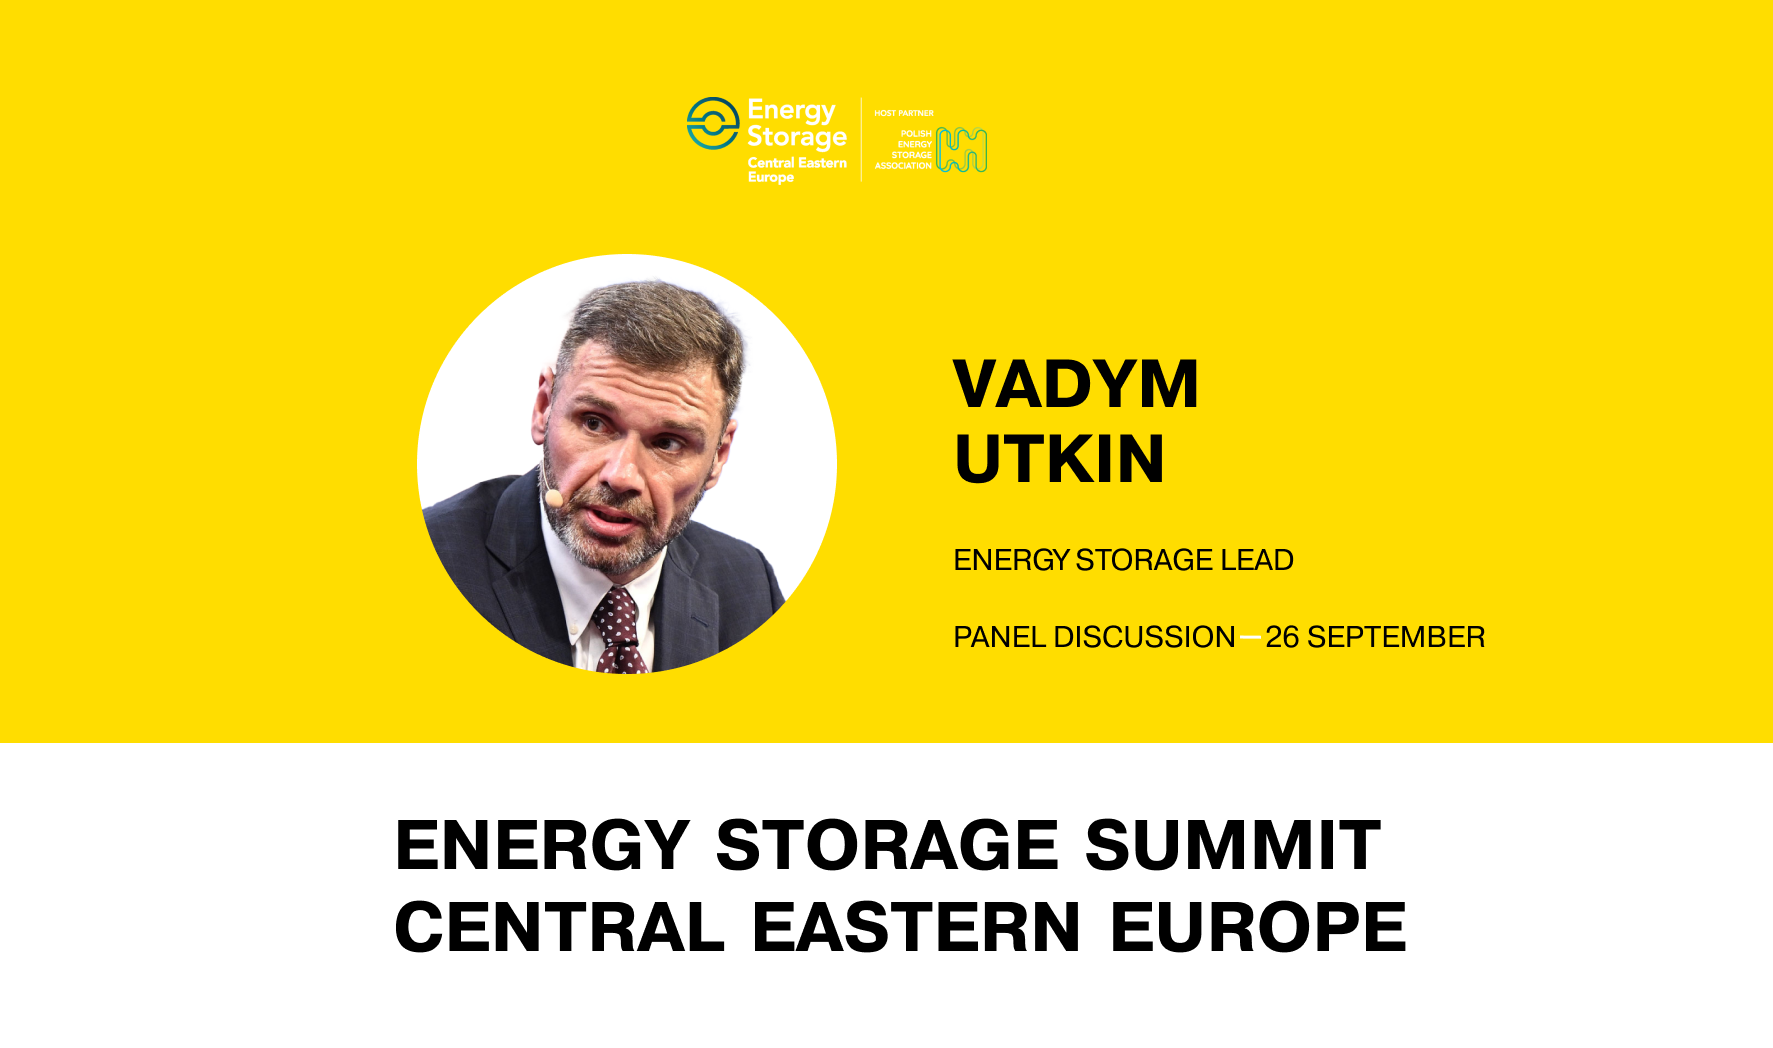 Energy Storage Lead DTEK to speak at Energy Storage Summit Central Eastern Europe